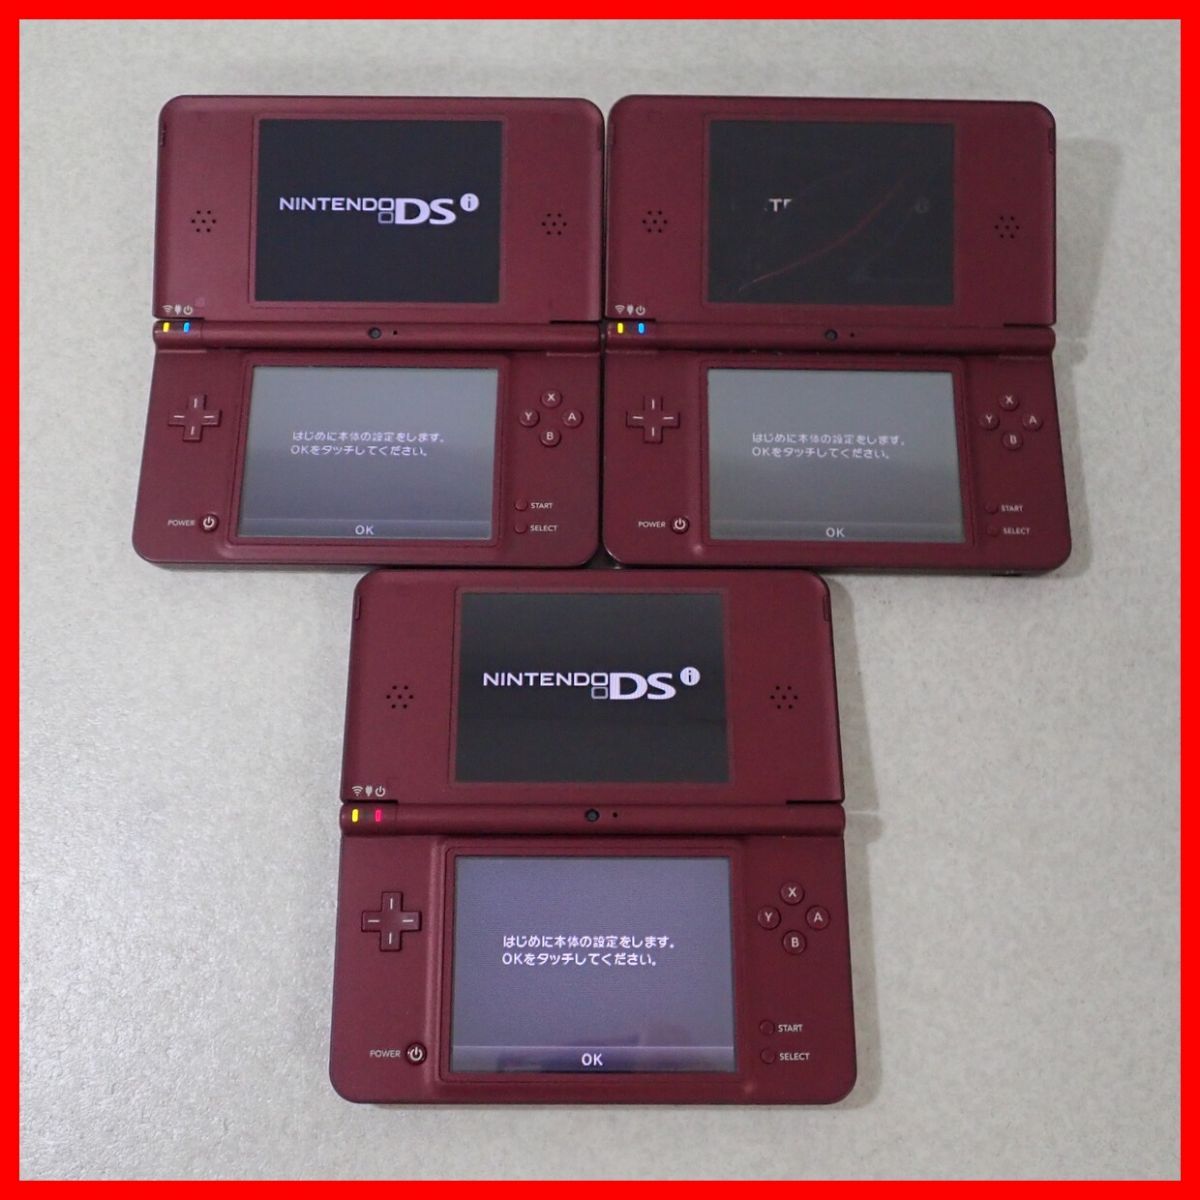  Nintendo DSiLL корпус UTL-001 голубой / wine red / темно-коричневый 6 шт. совместно комплект Nintendo Junk [10